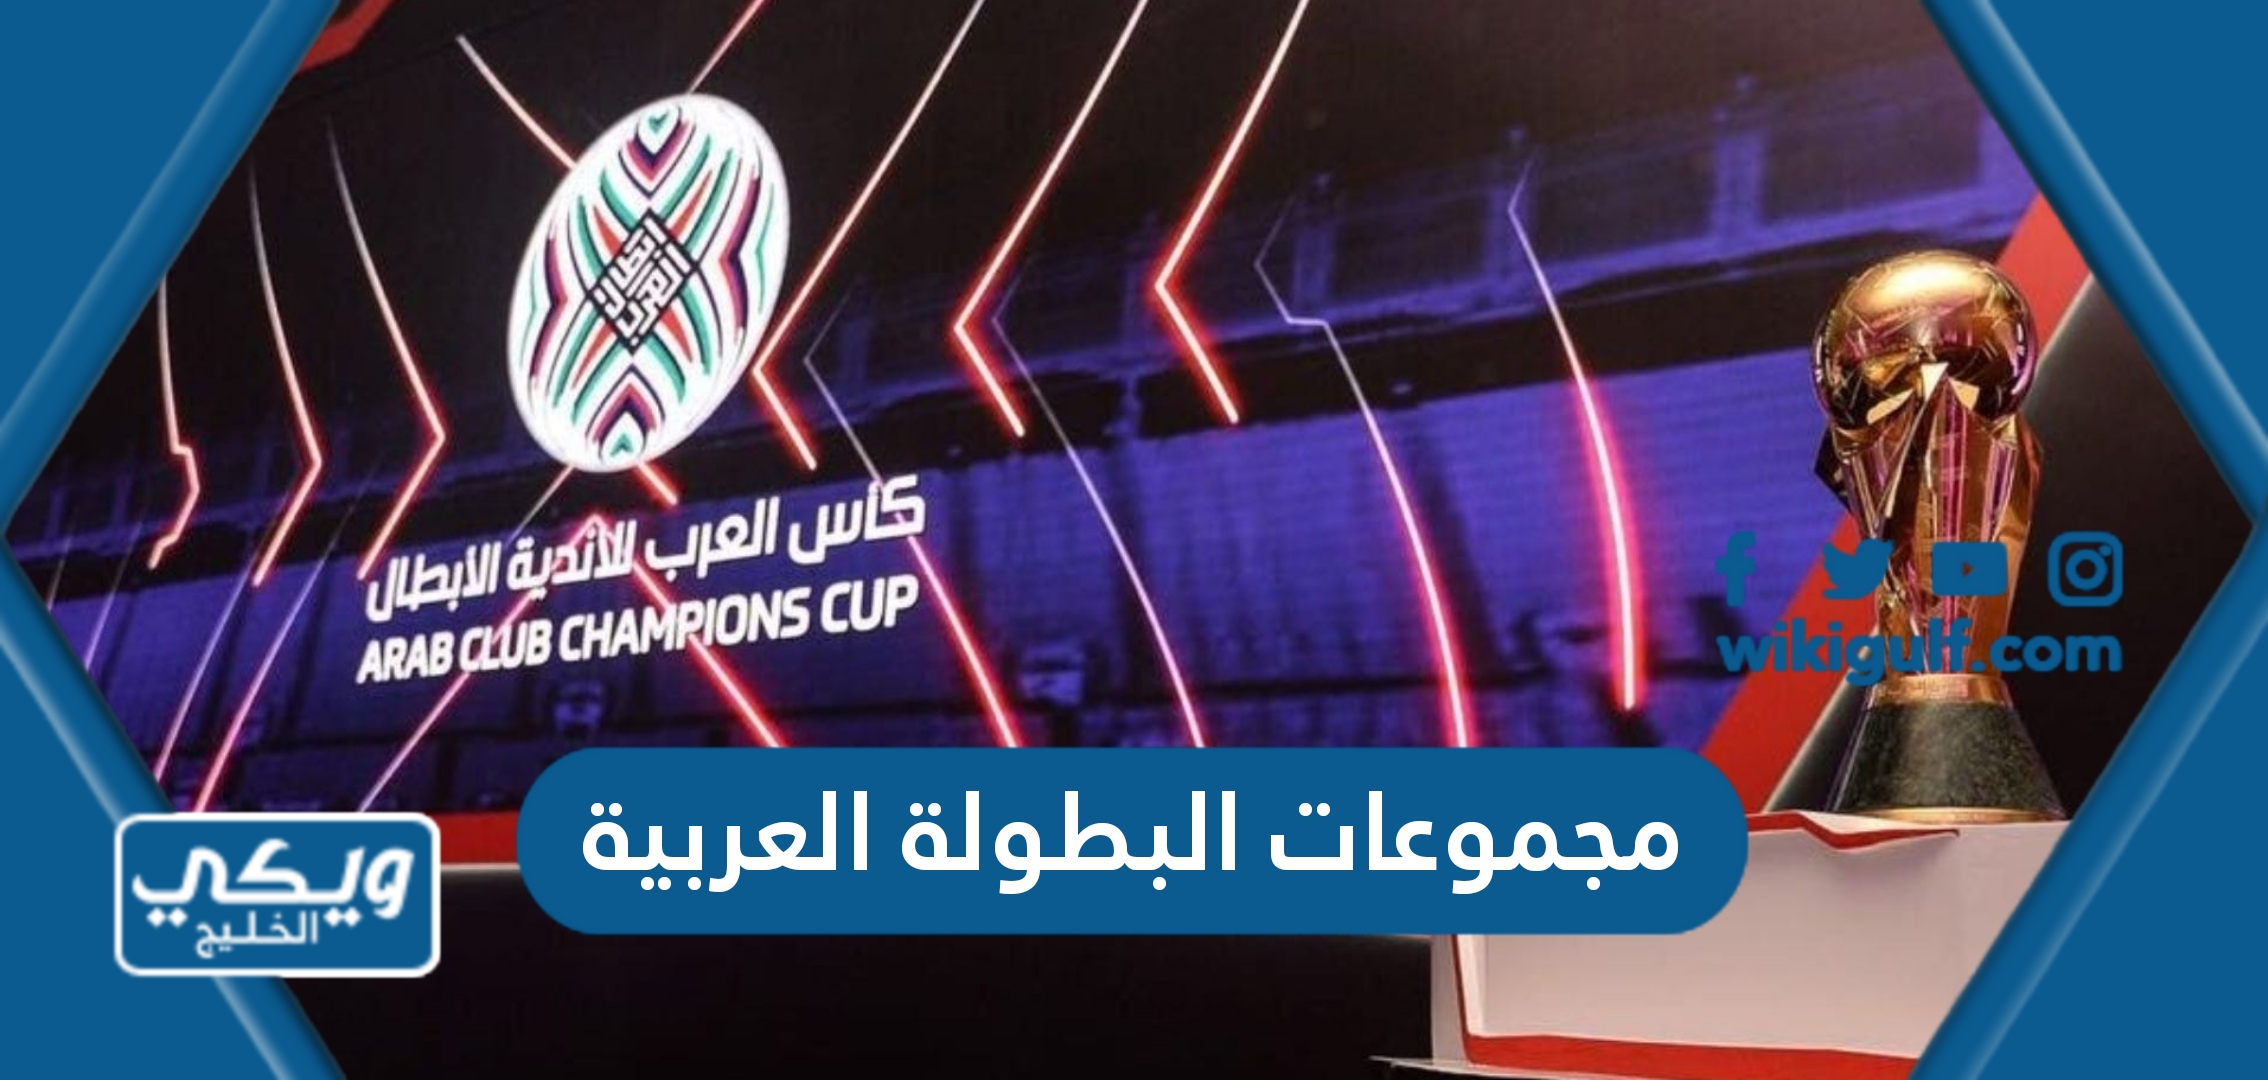 مجموعات البطولة العربية